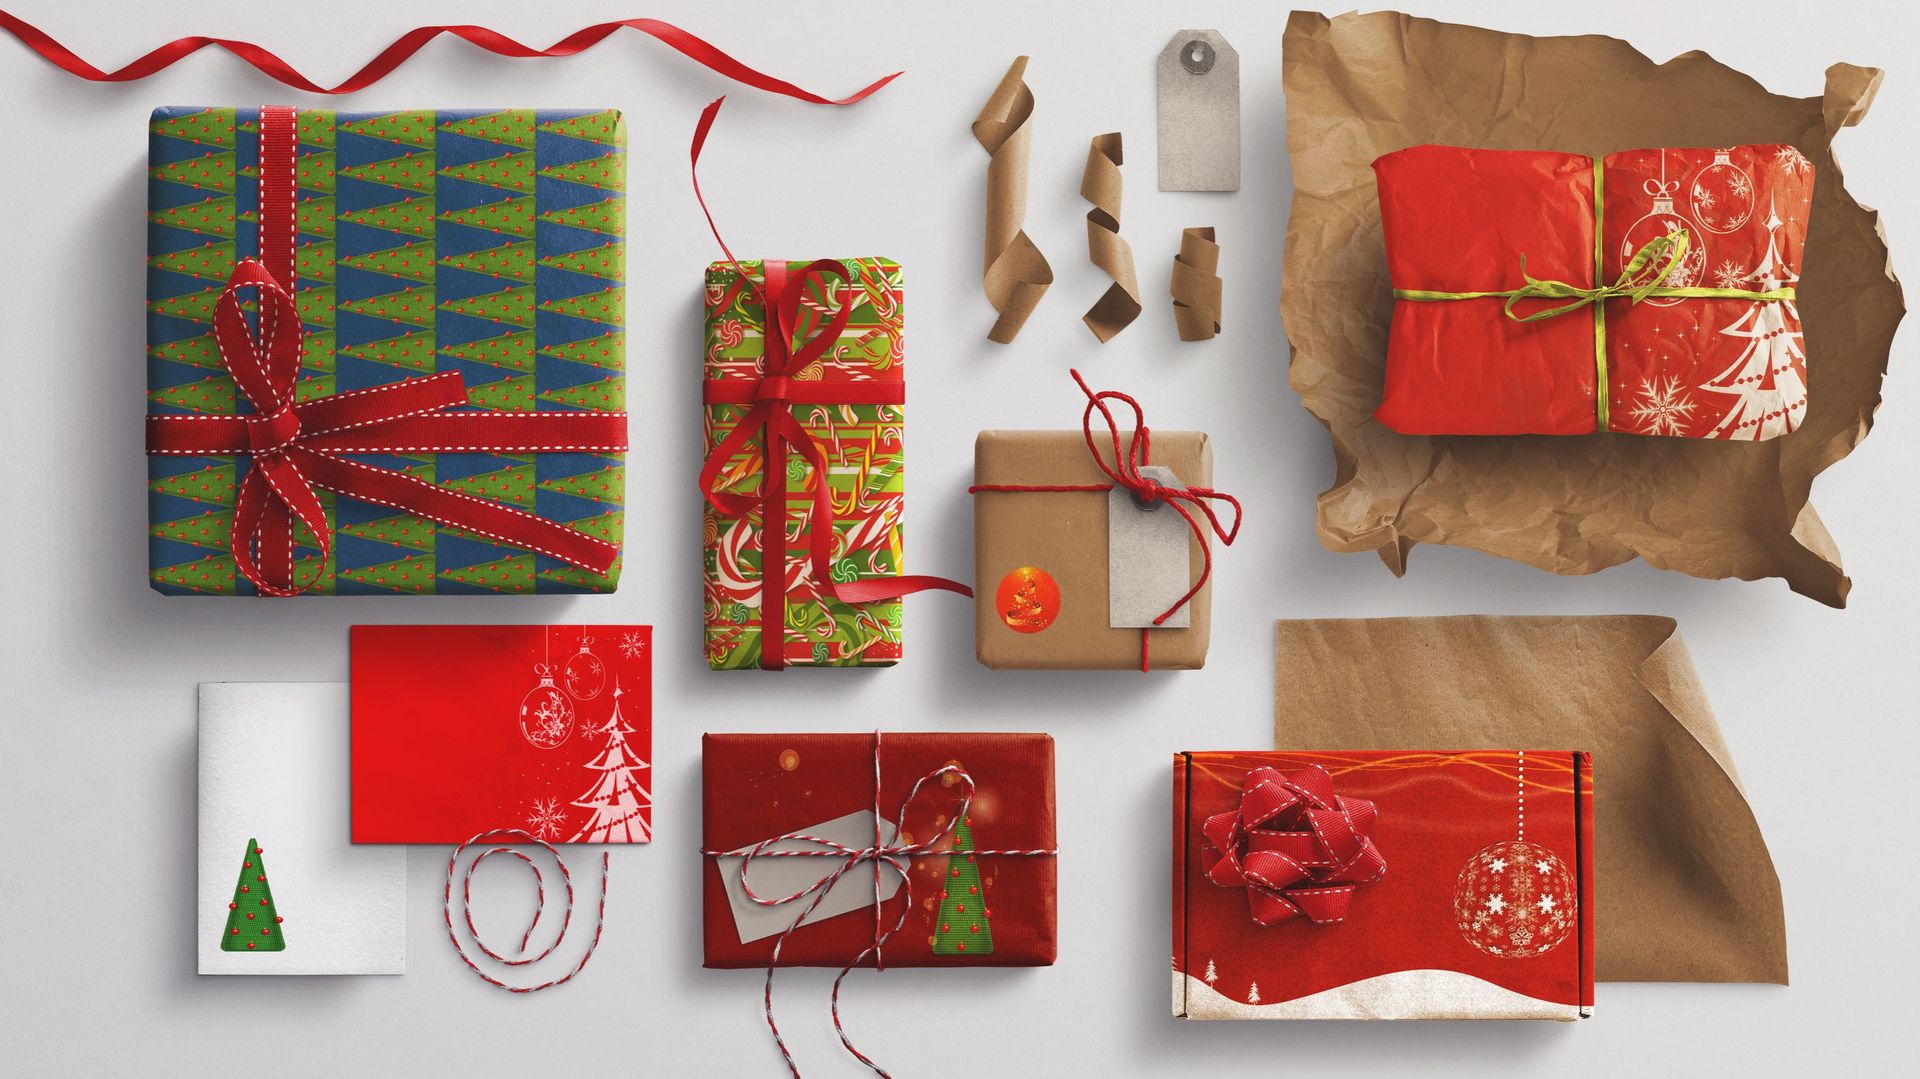 Avez-vous déjà fait votre liste de cadeaux pour Noël ? Découvrez quelques idées tendances